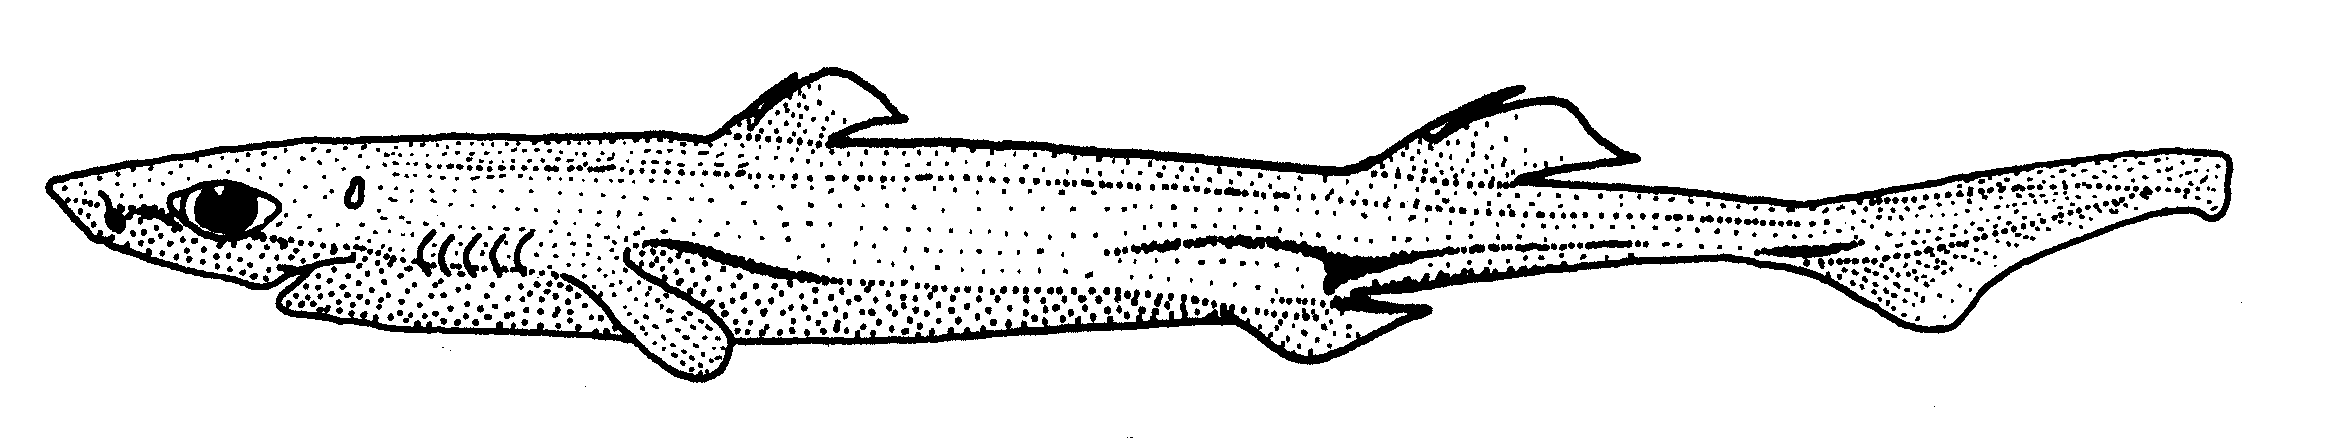 「フジクジラ」のイメージ画